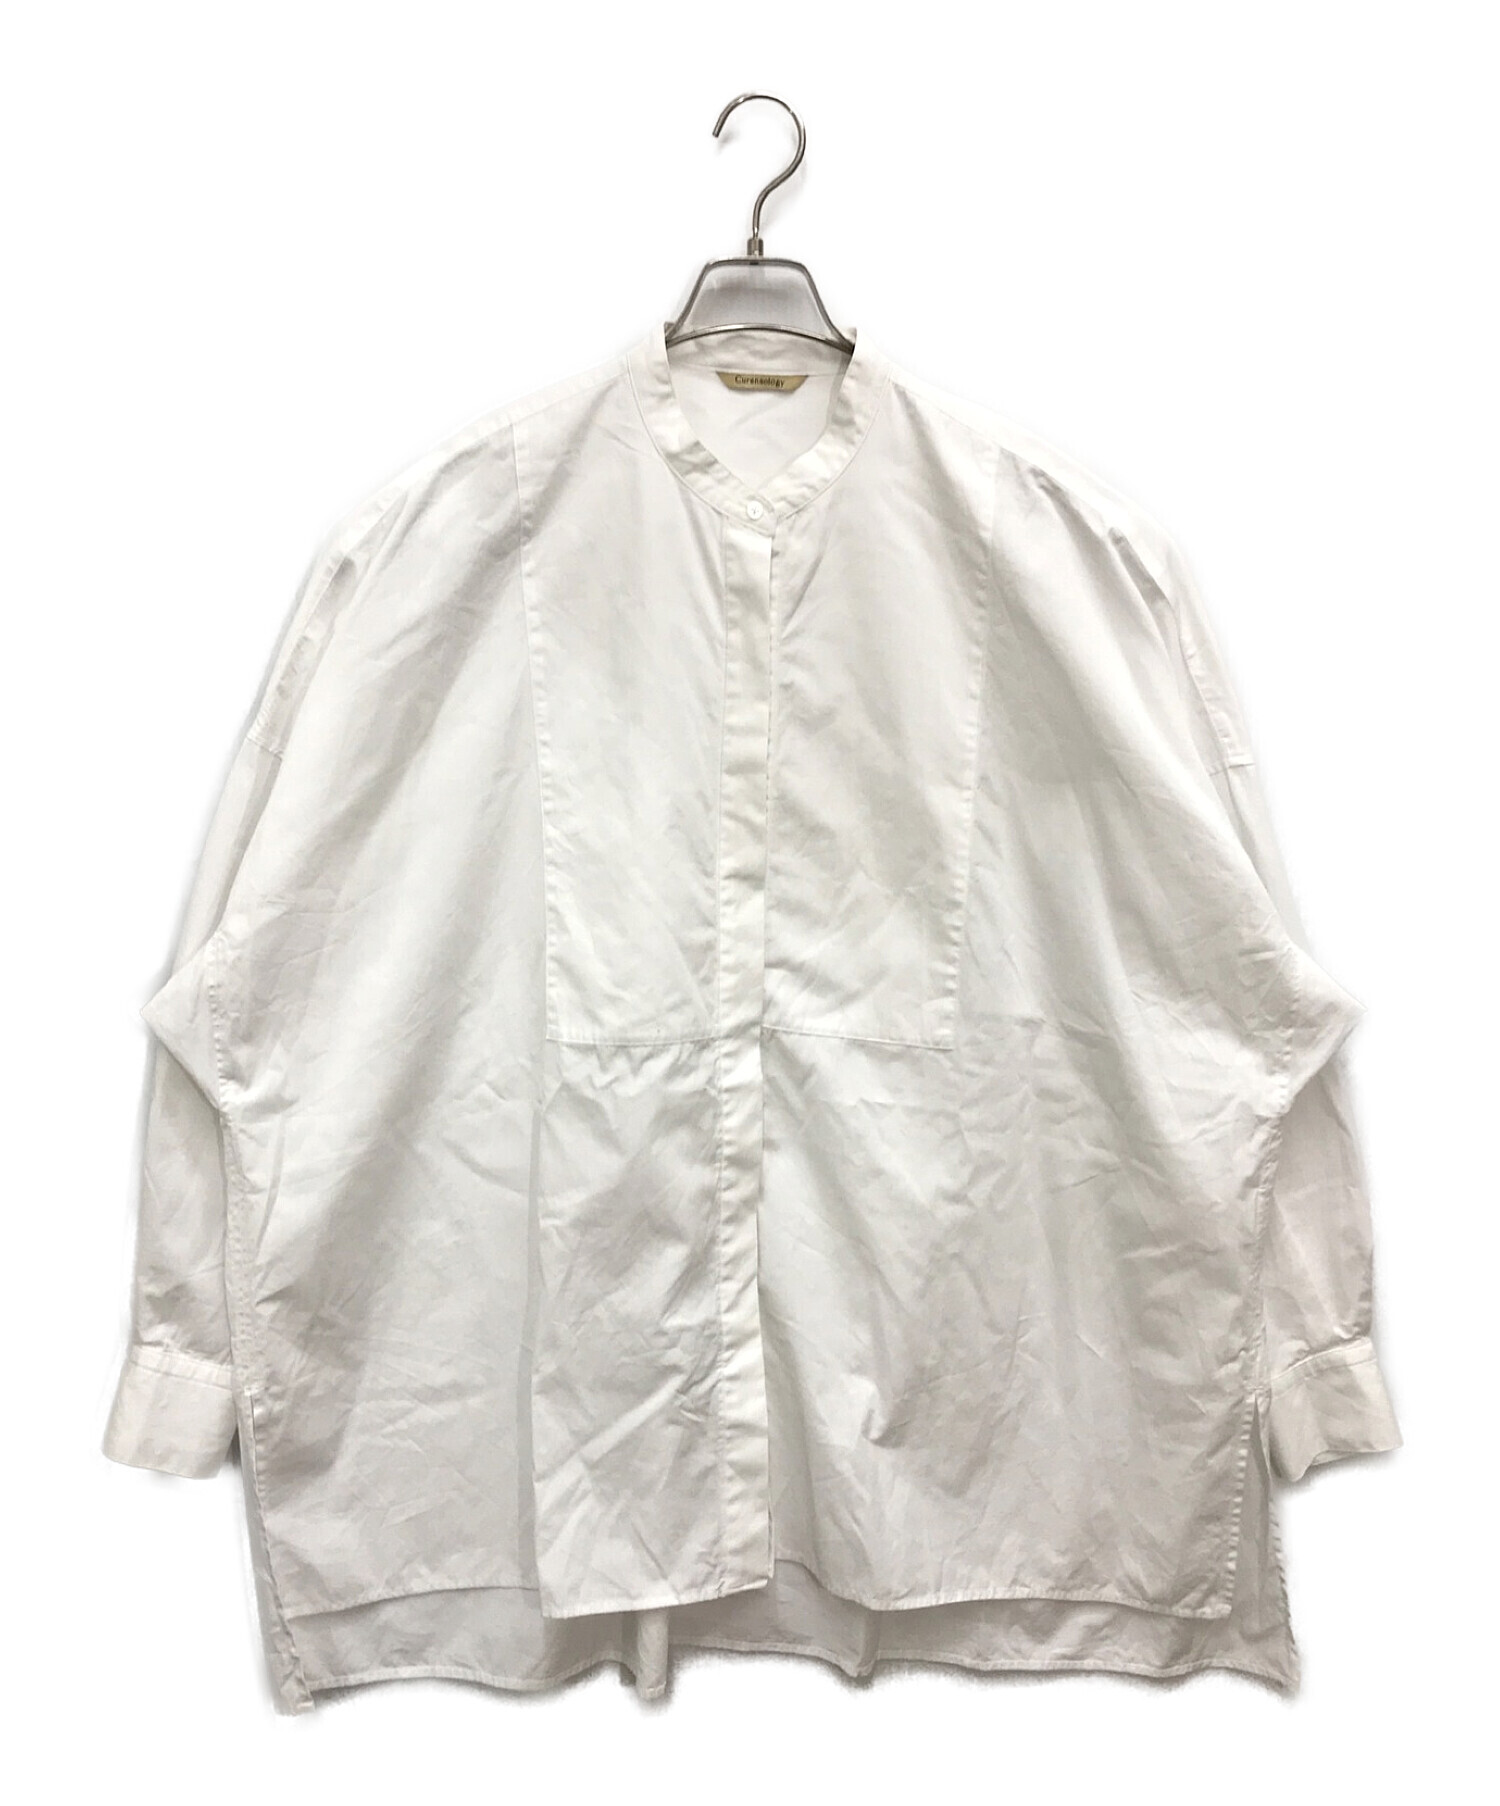 Curensology (カレンソロジー) バンドカラーシャツ / 長袖シャツ ホワイト サイズ:FREE